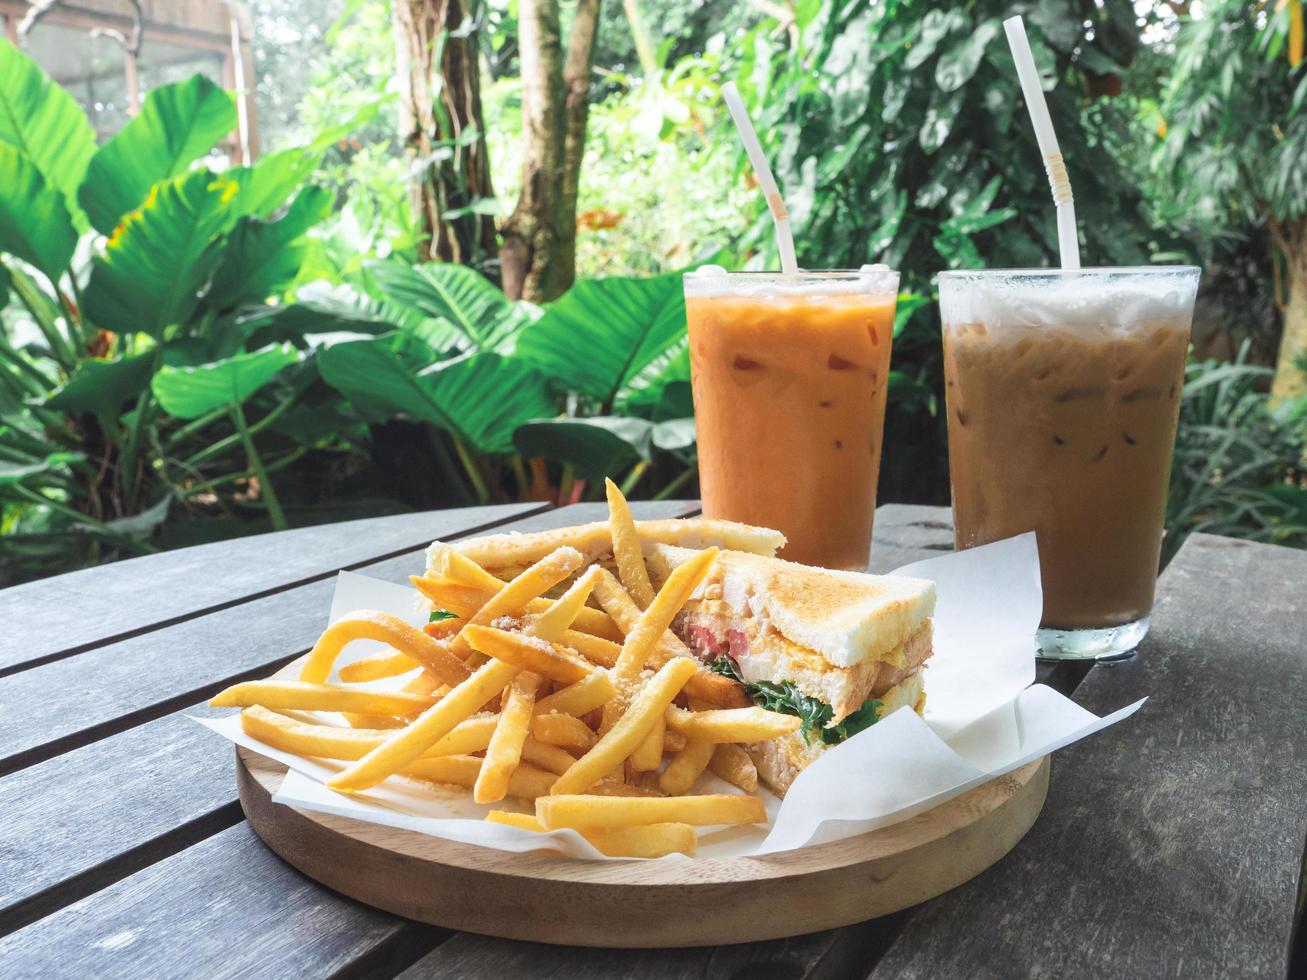 Pommes frites mit Sandwich in Holzplatte Frühstück mit thailändischem Tee und Kaffee Milch weiß auf Holztisch im Café und grüner Pflanzenhintergrund foto